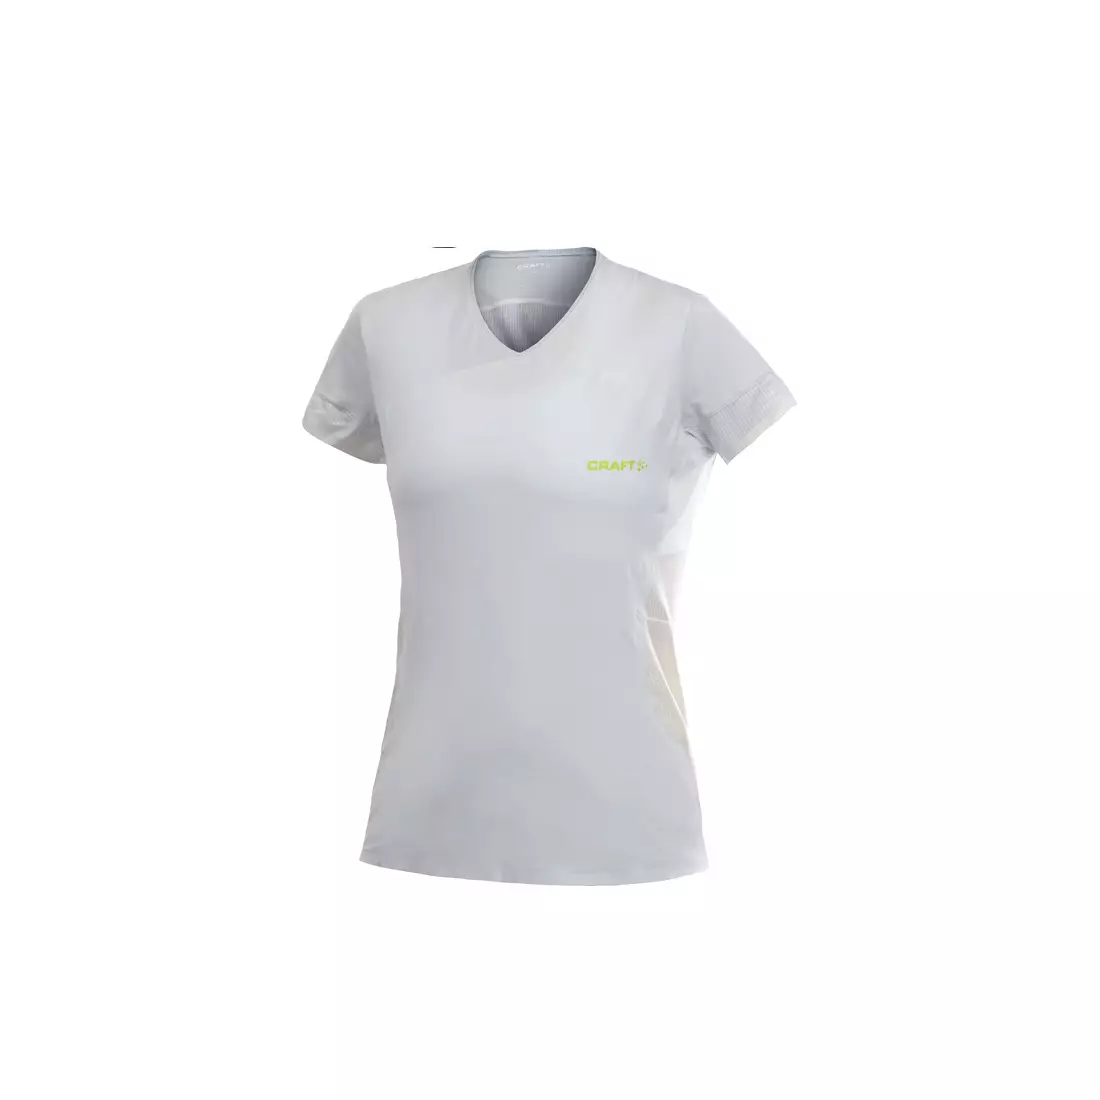 CRAFT ELITE - women's running T-shirt 1900616-2910